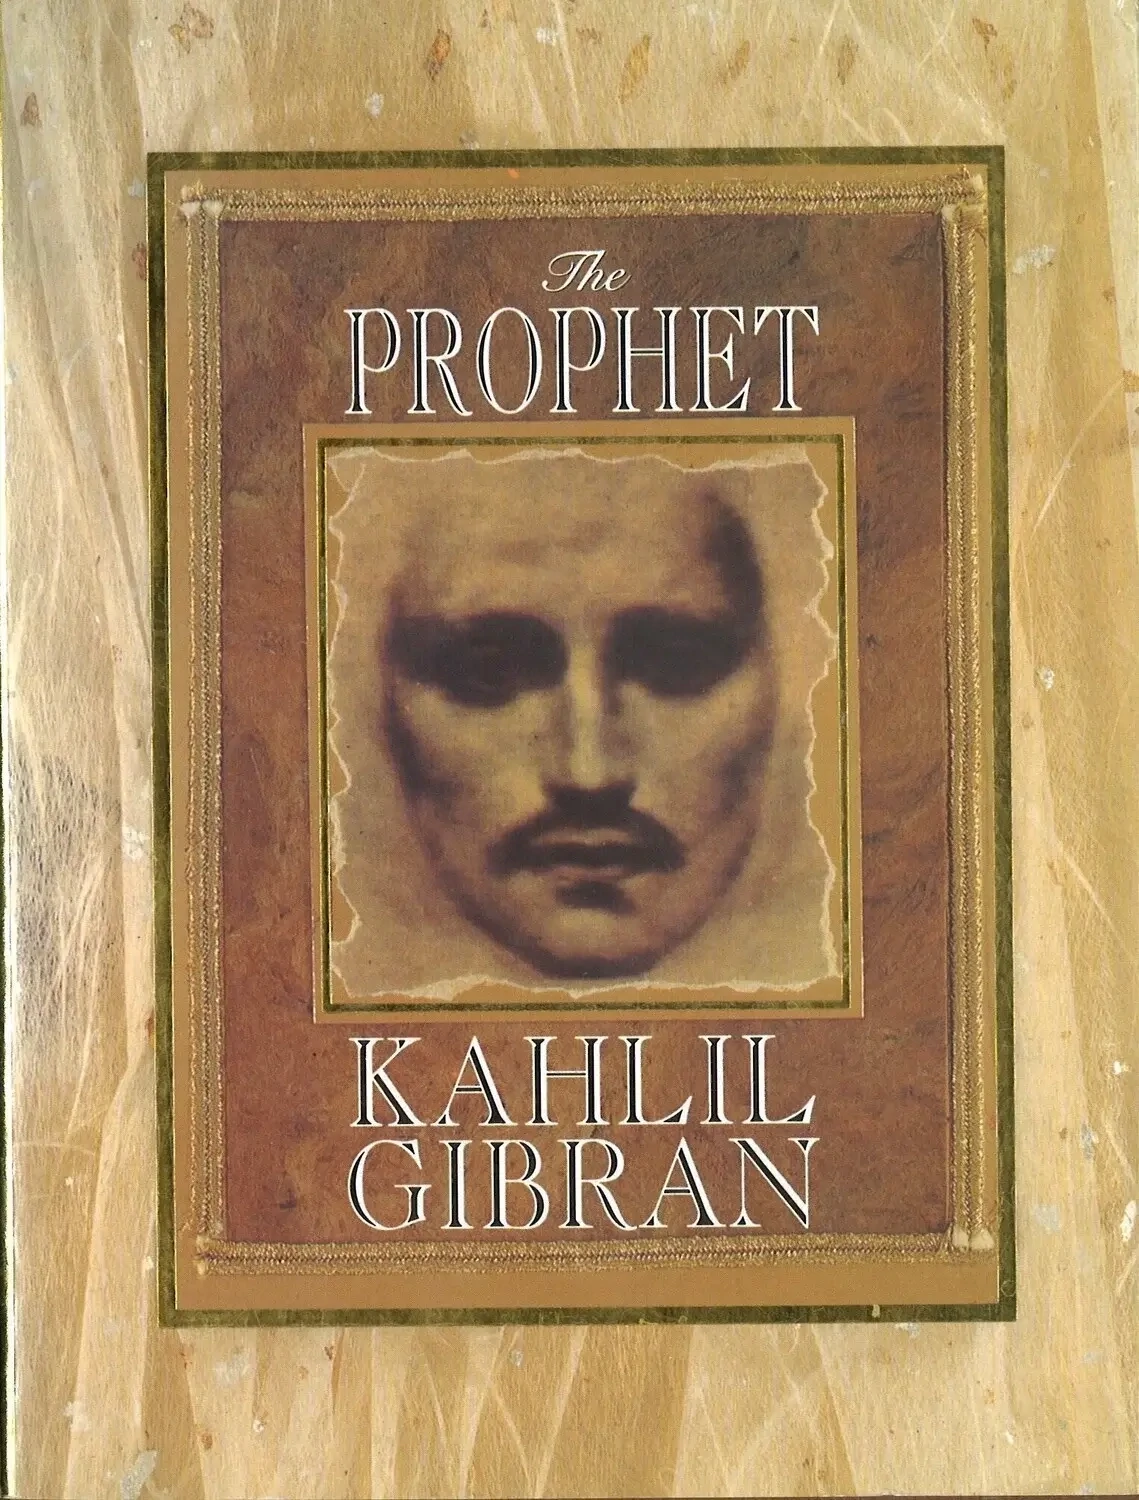 The Prophet (Hardcover), Kahlil Gibran